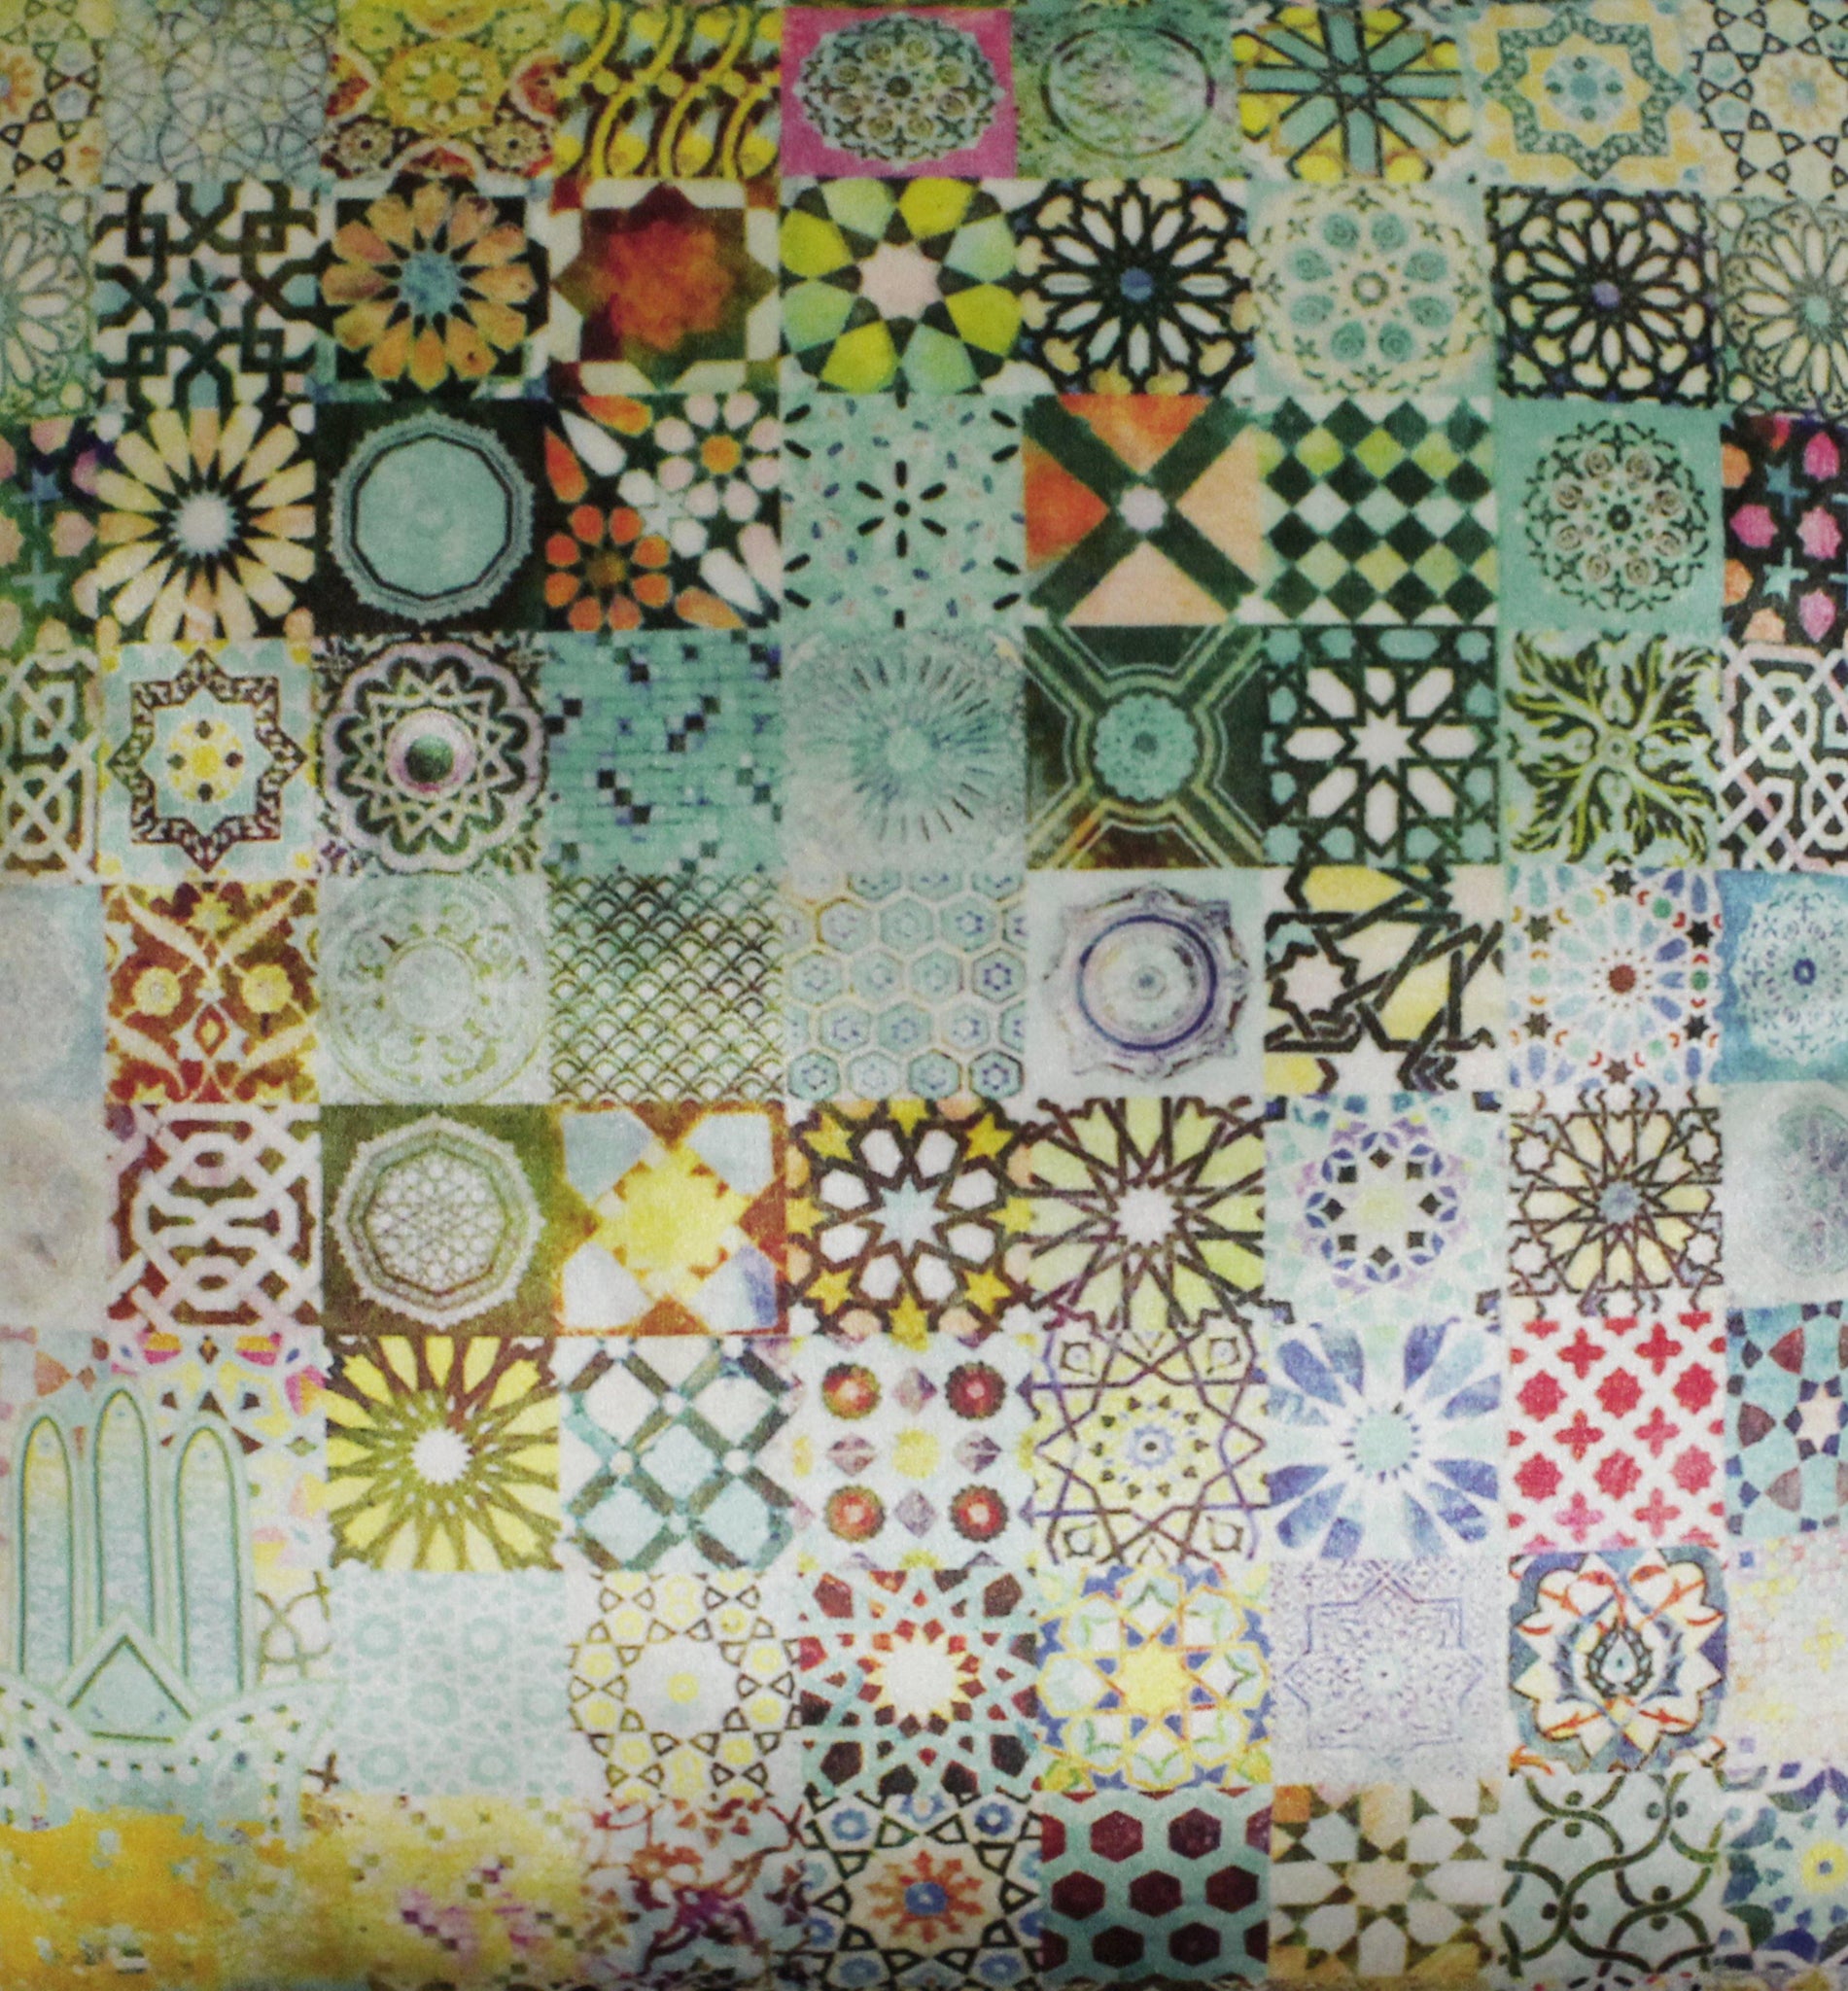 Abstract Arabesque Geometric Decorative Cushion Cover - Vellato Tex